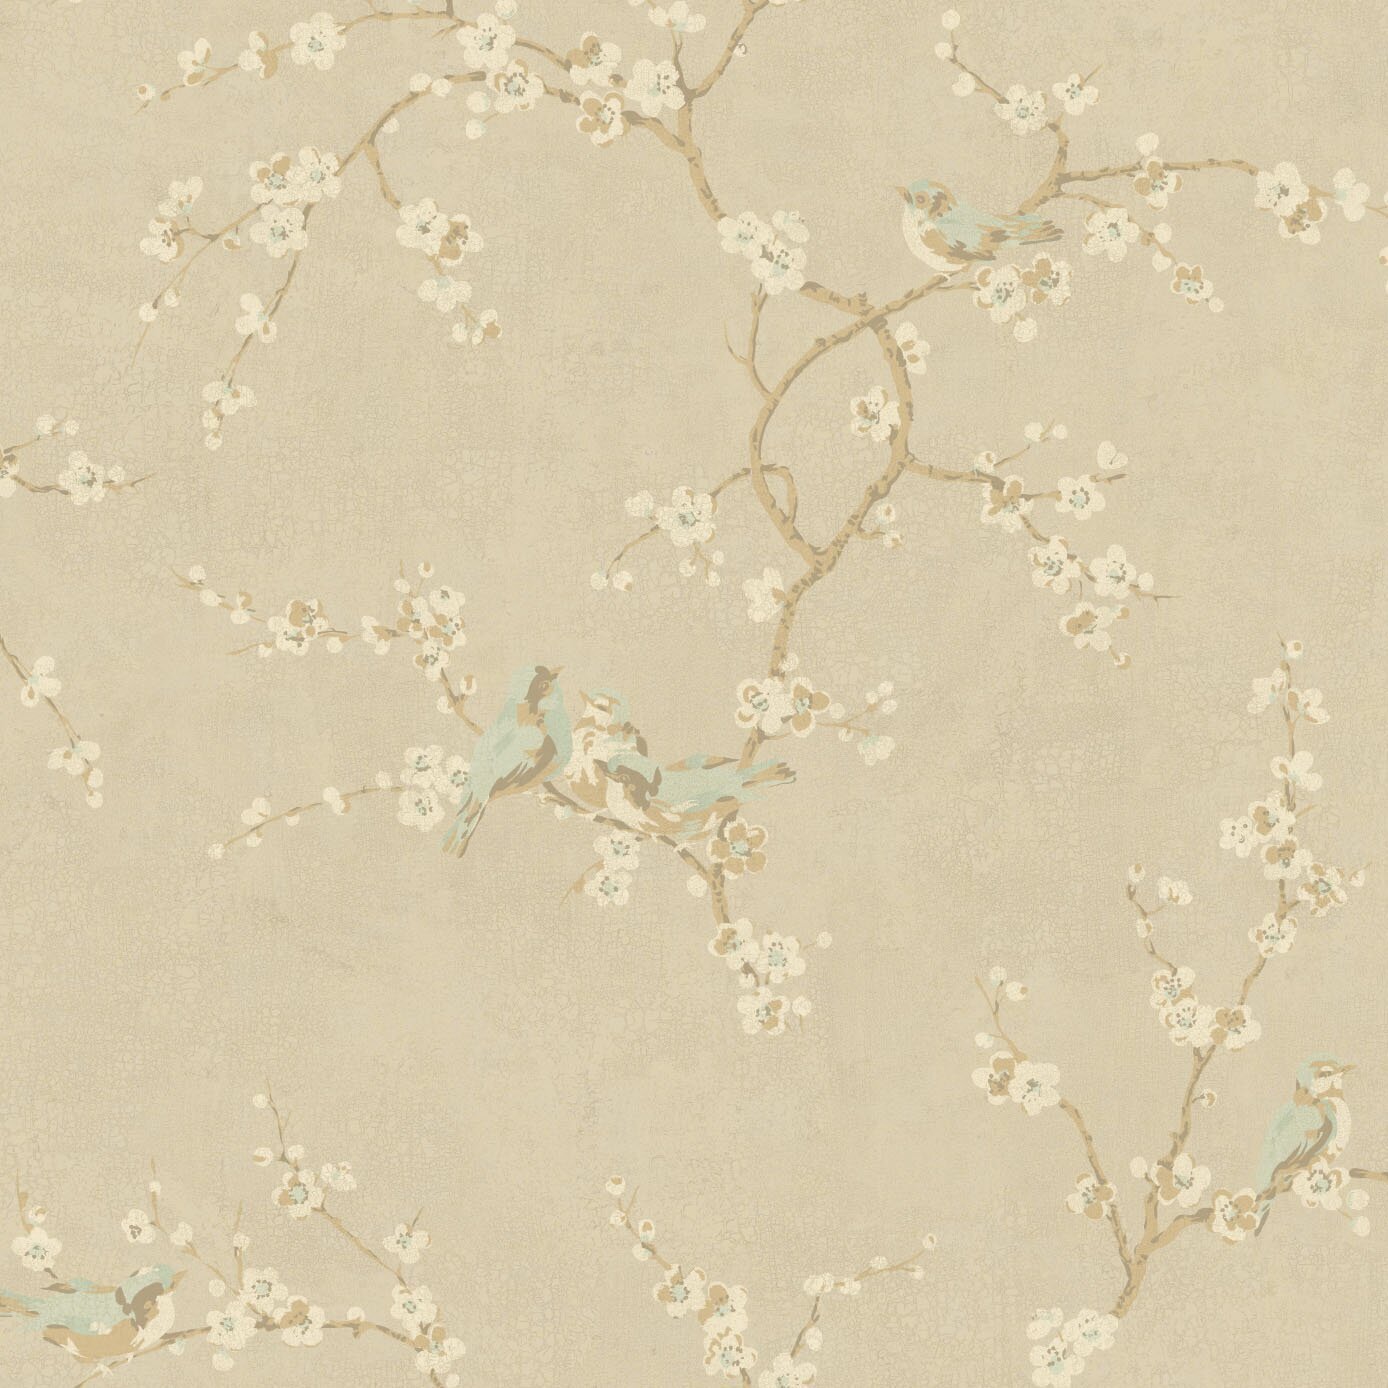 Cherry blossom moisture resistant wallpaper